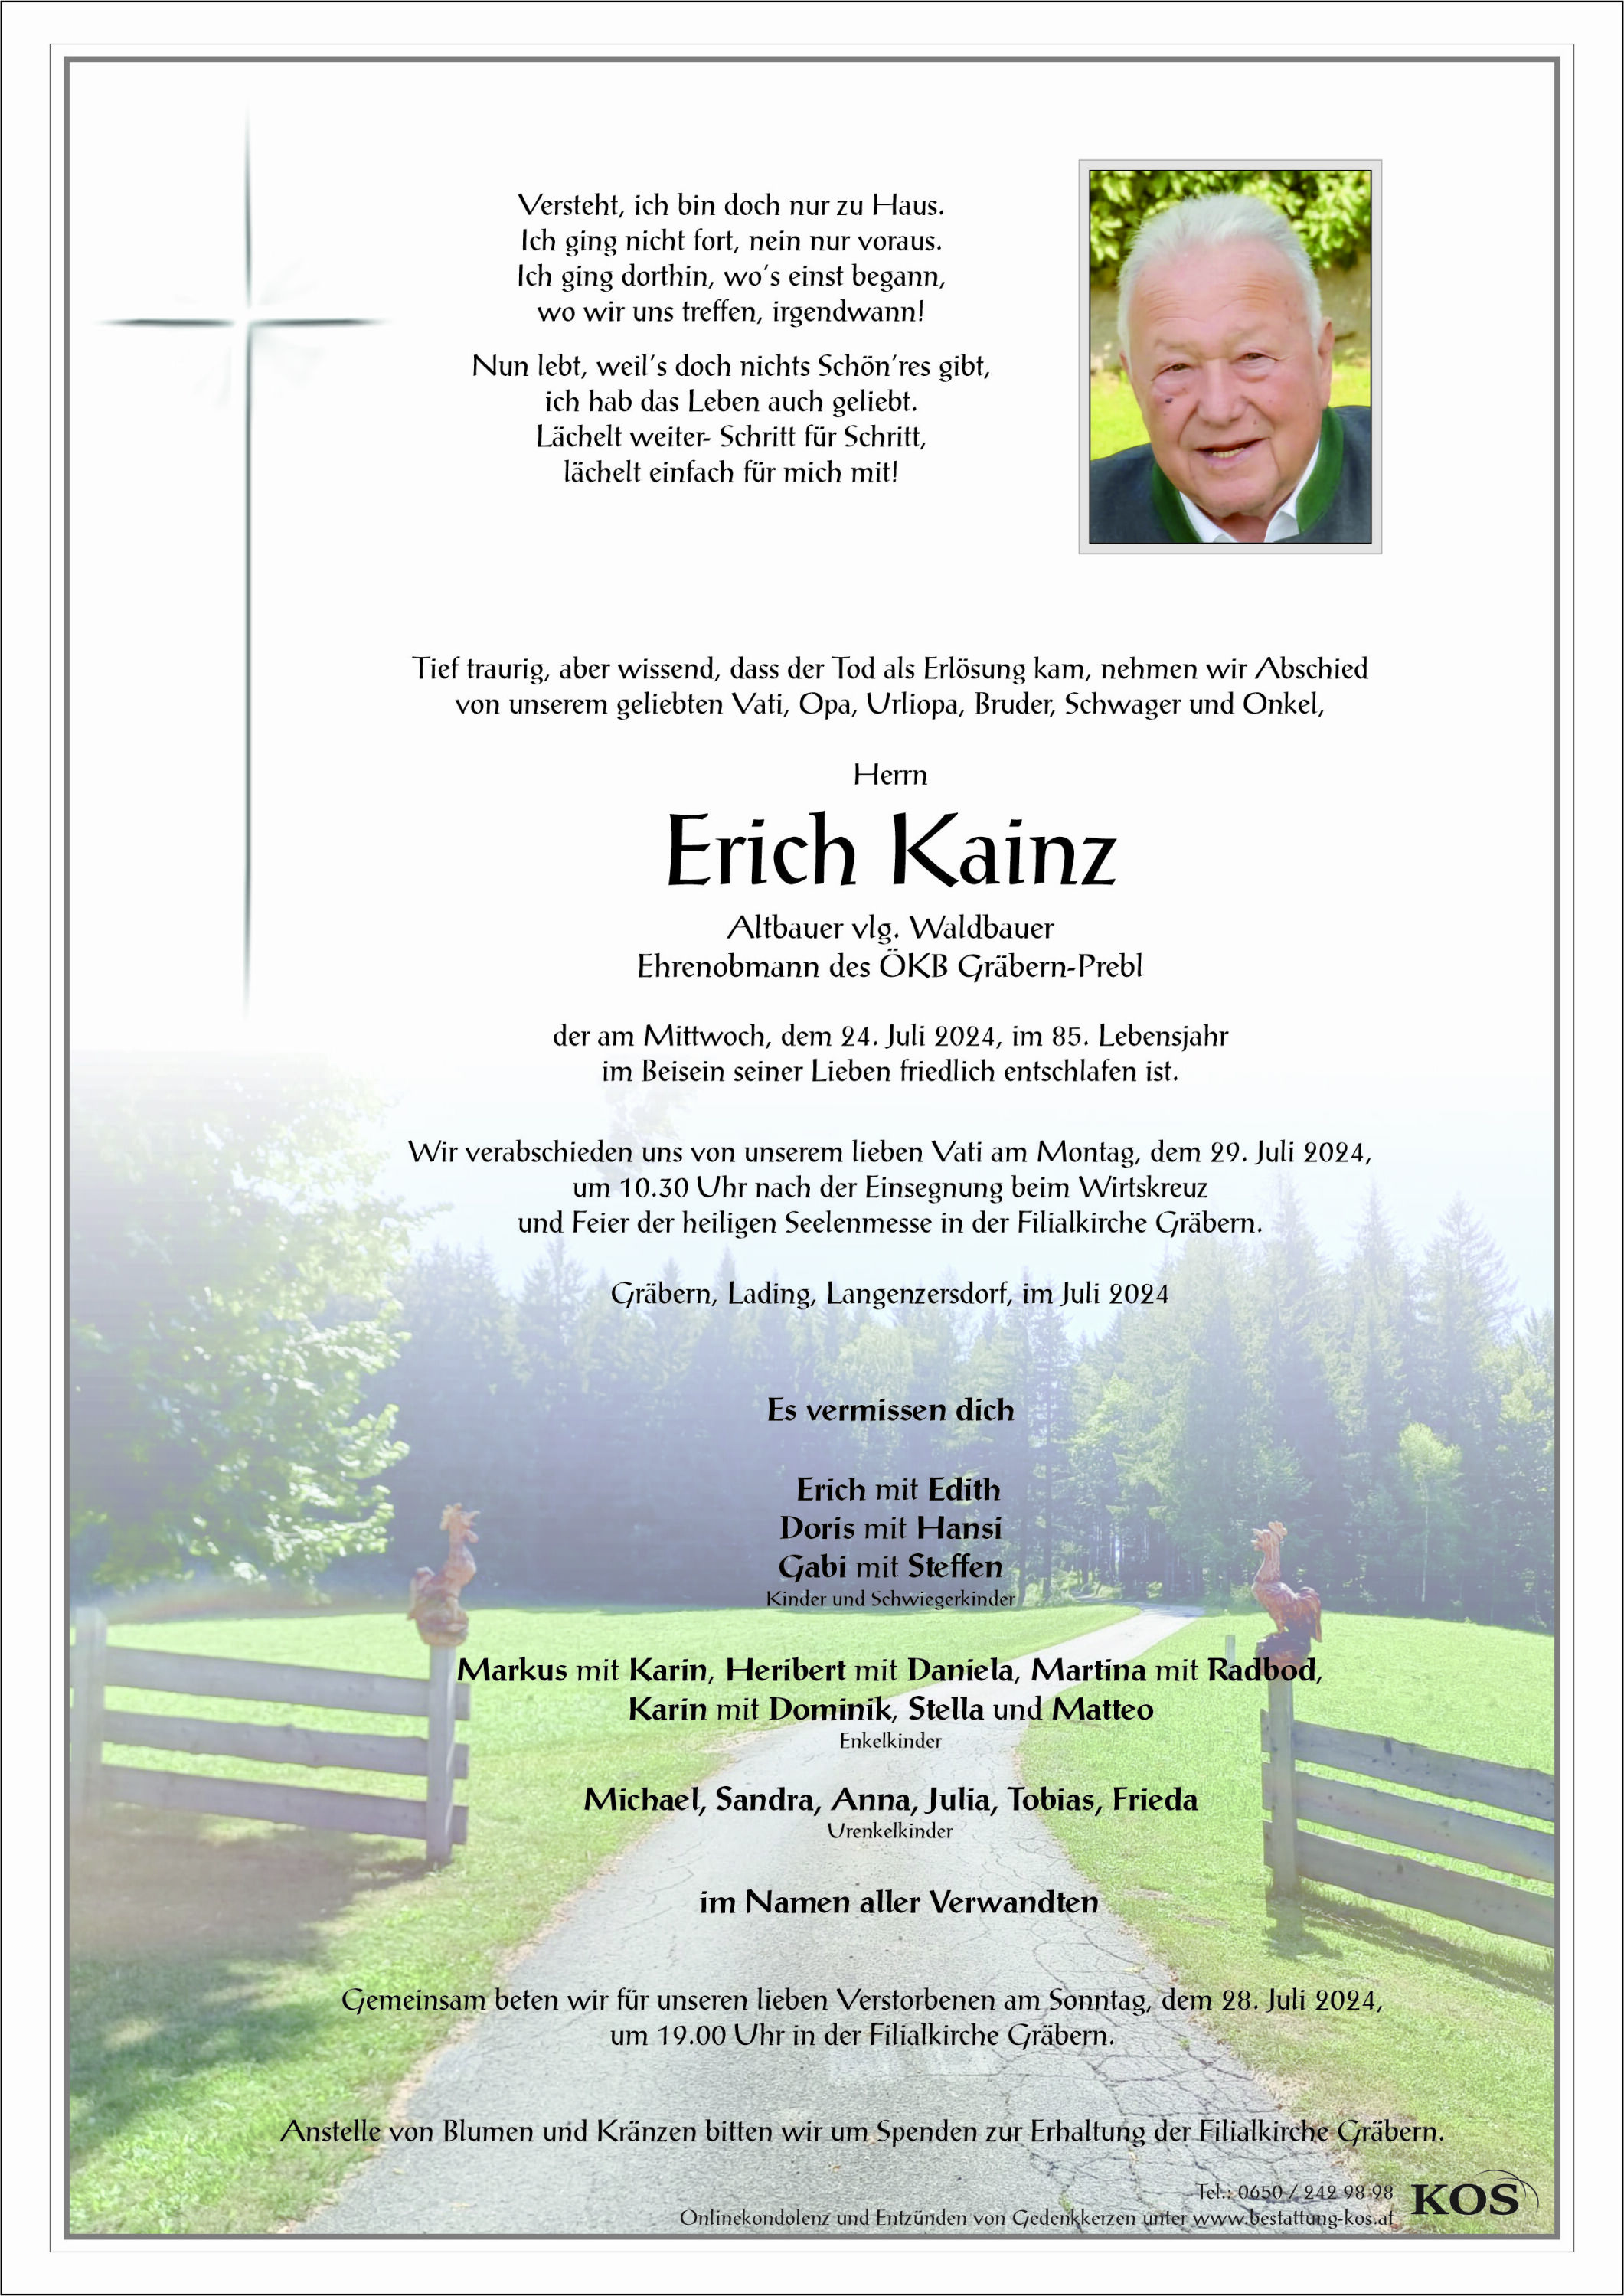 Erich Kainz